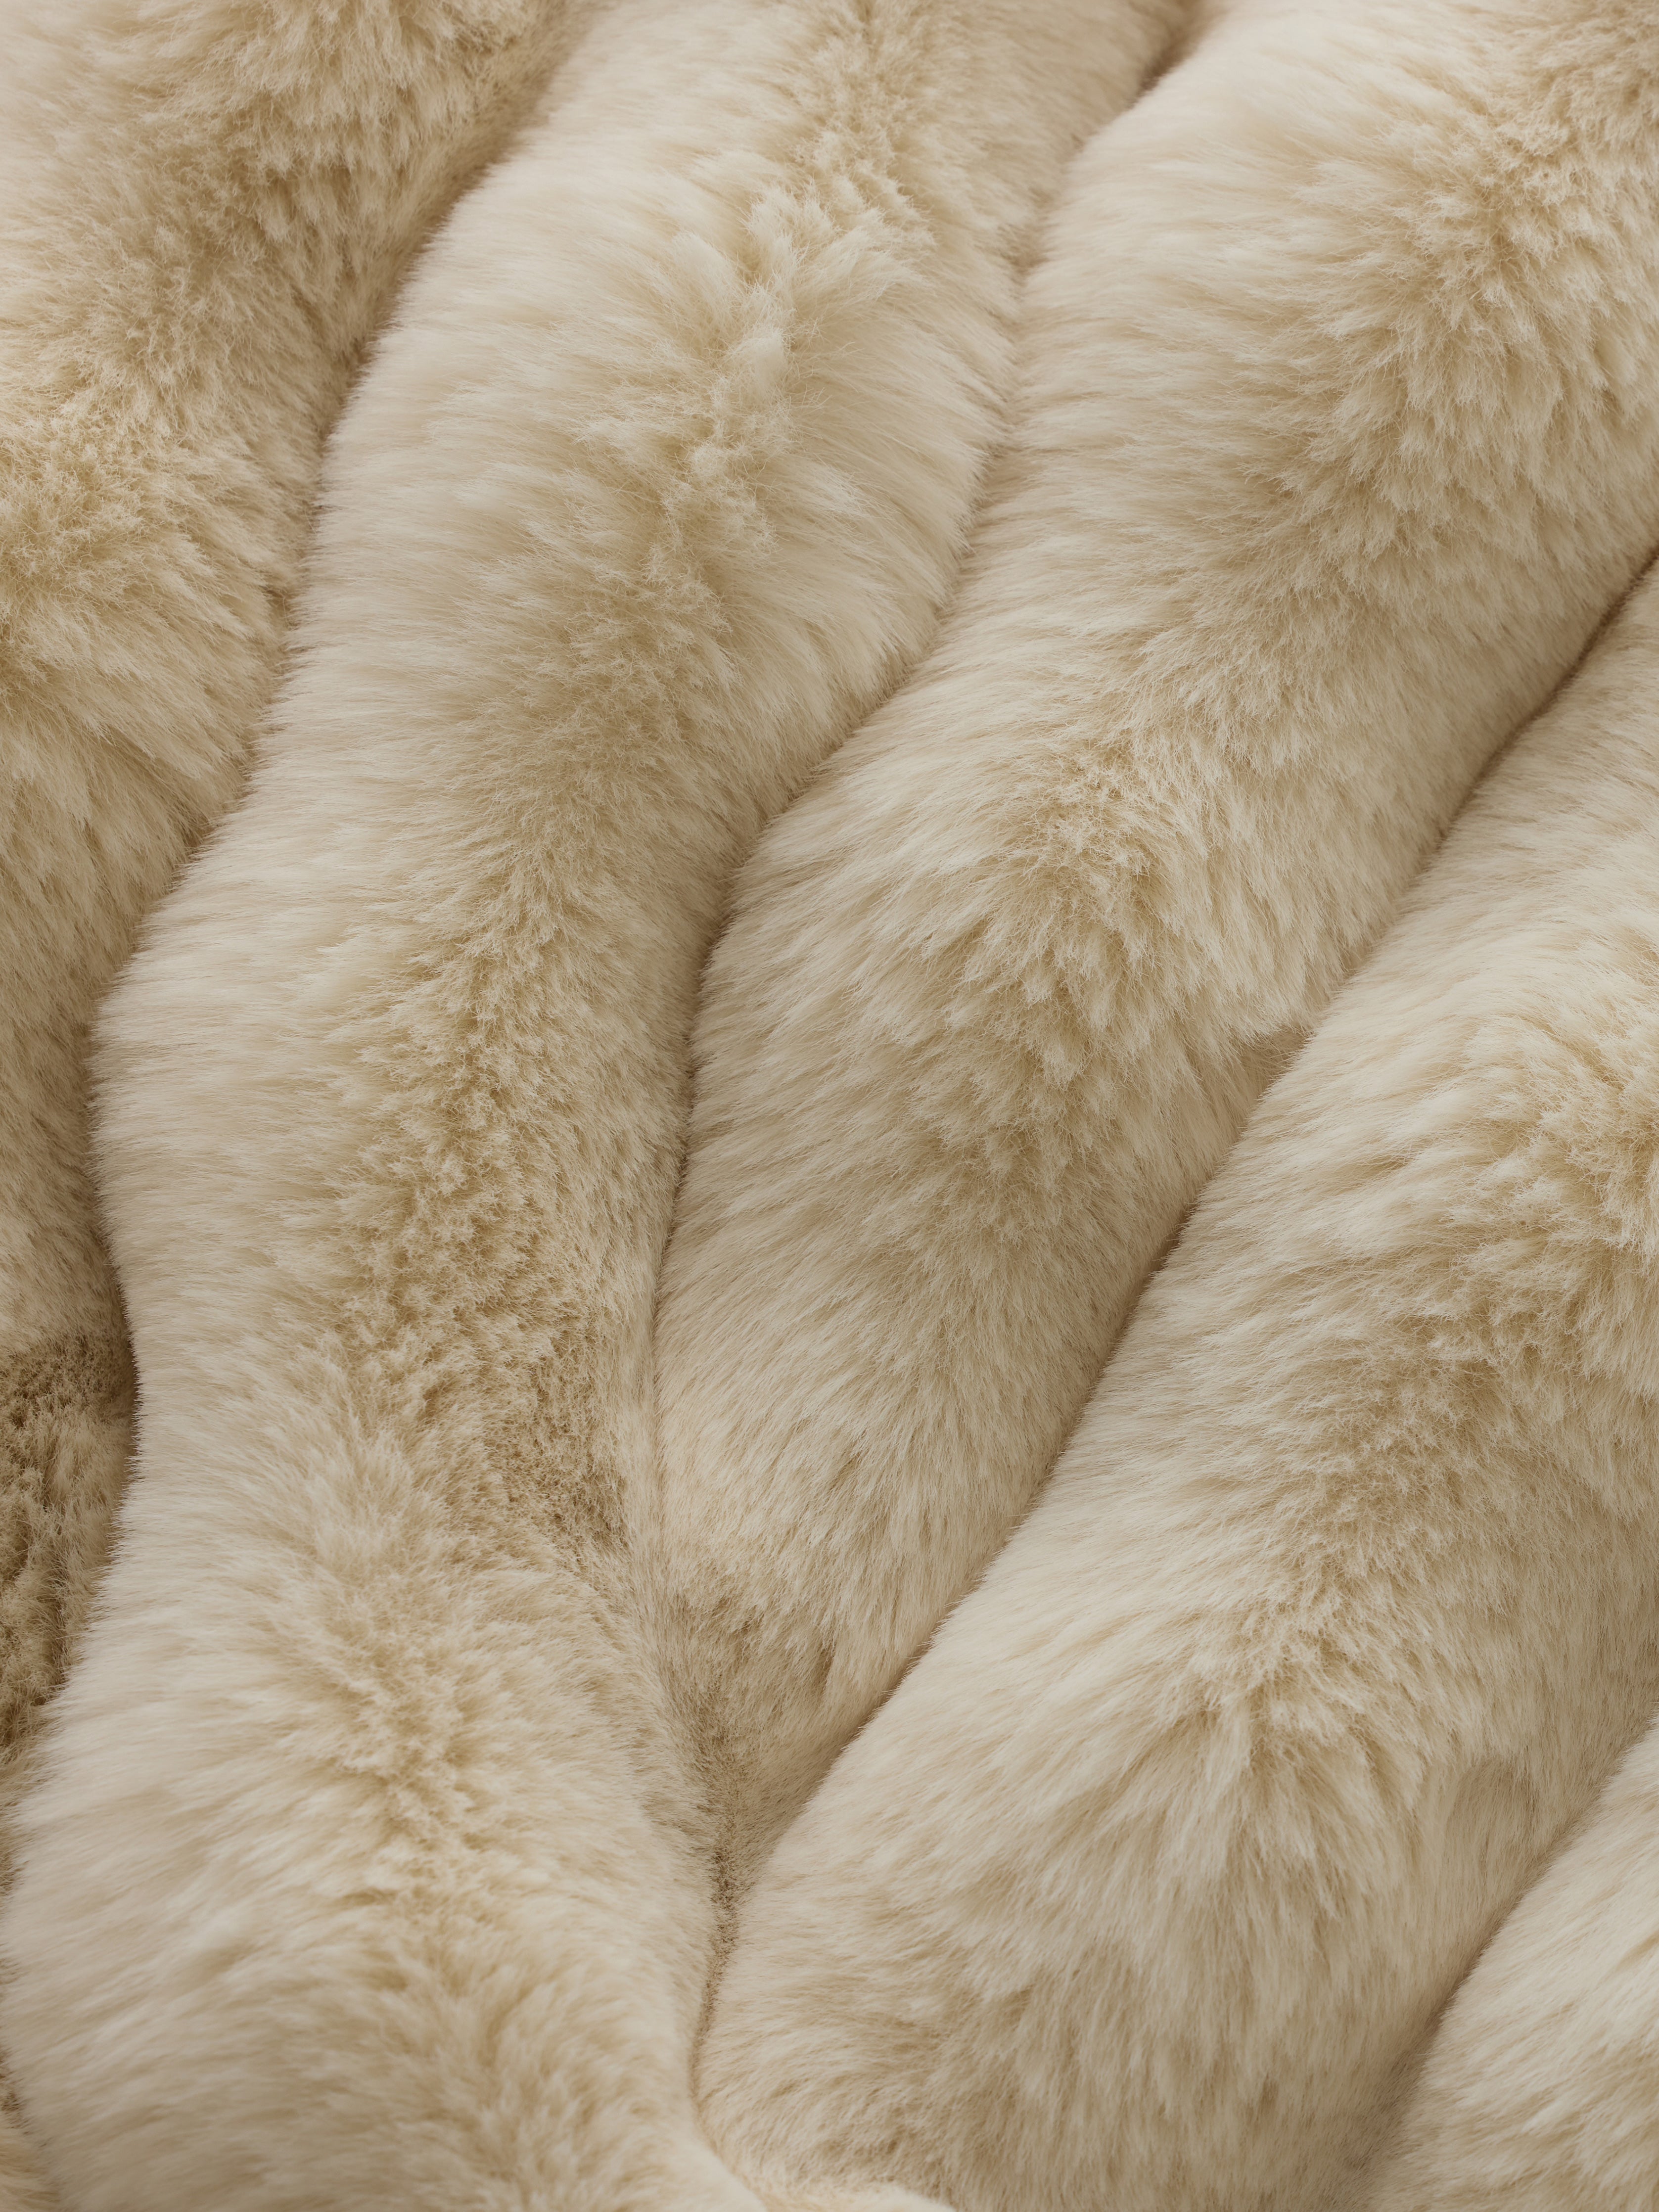 Creme lush faux fur blanket close up |Color:Creme